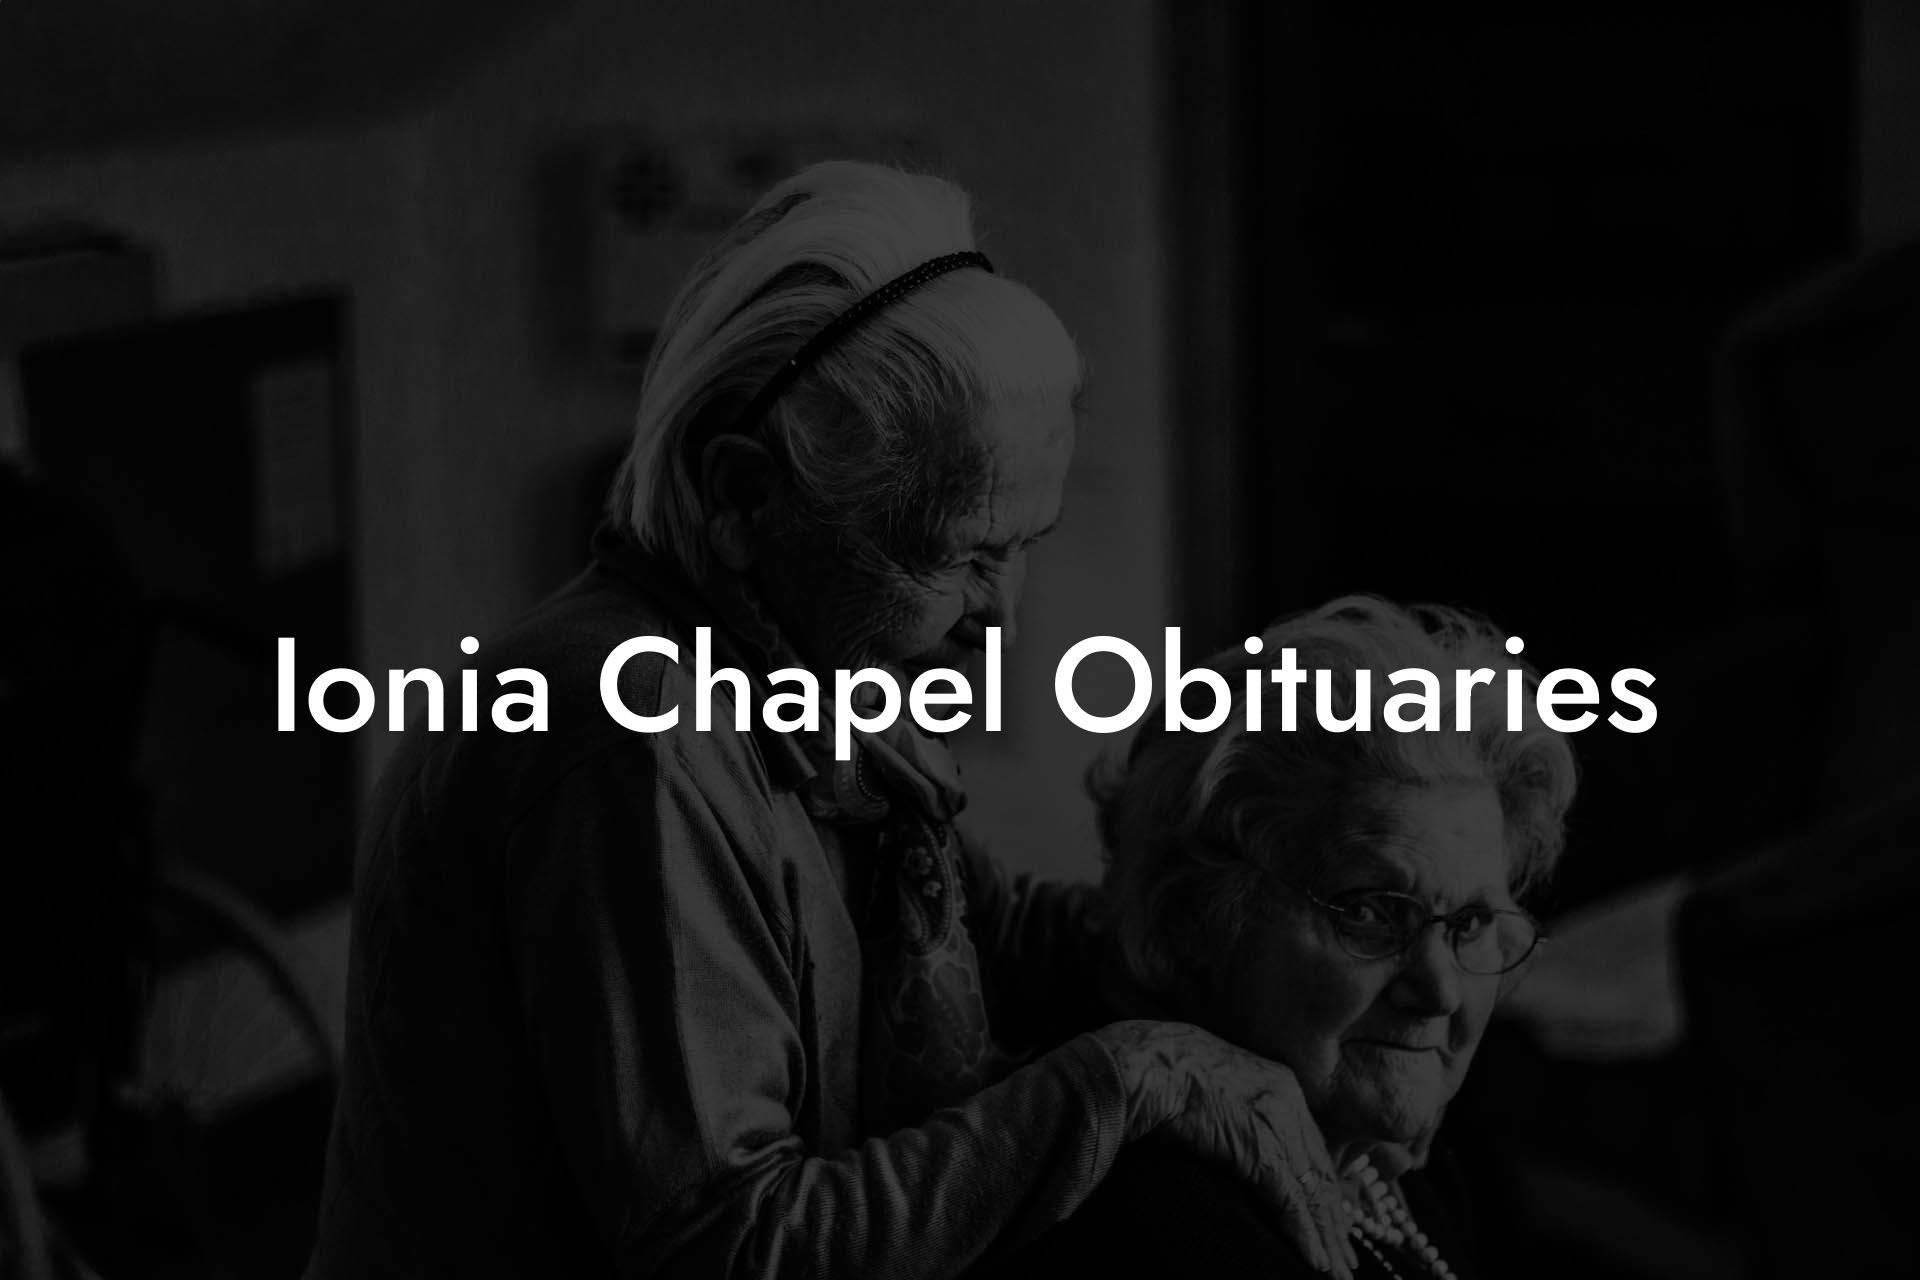 Ionia Chapel Obituaries